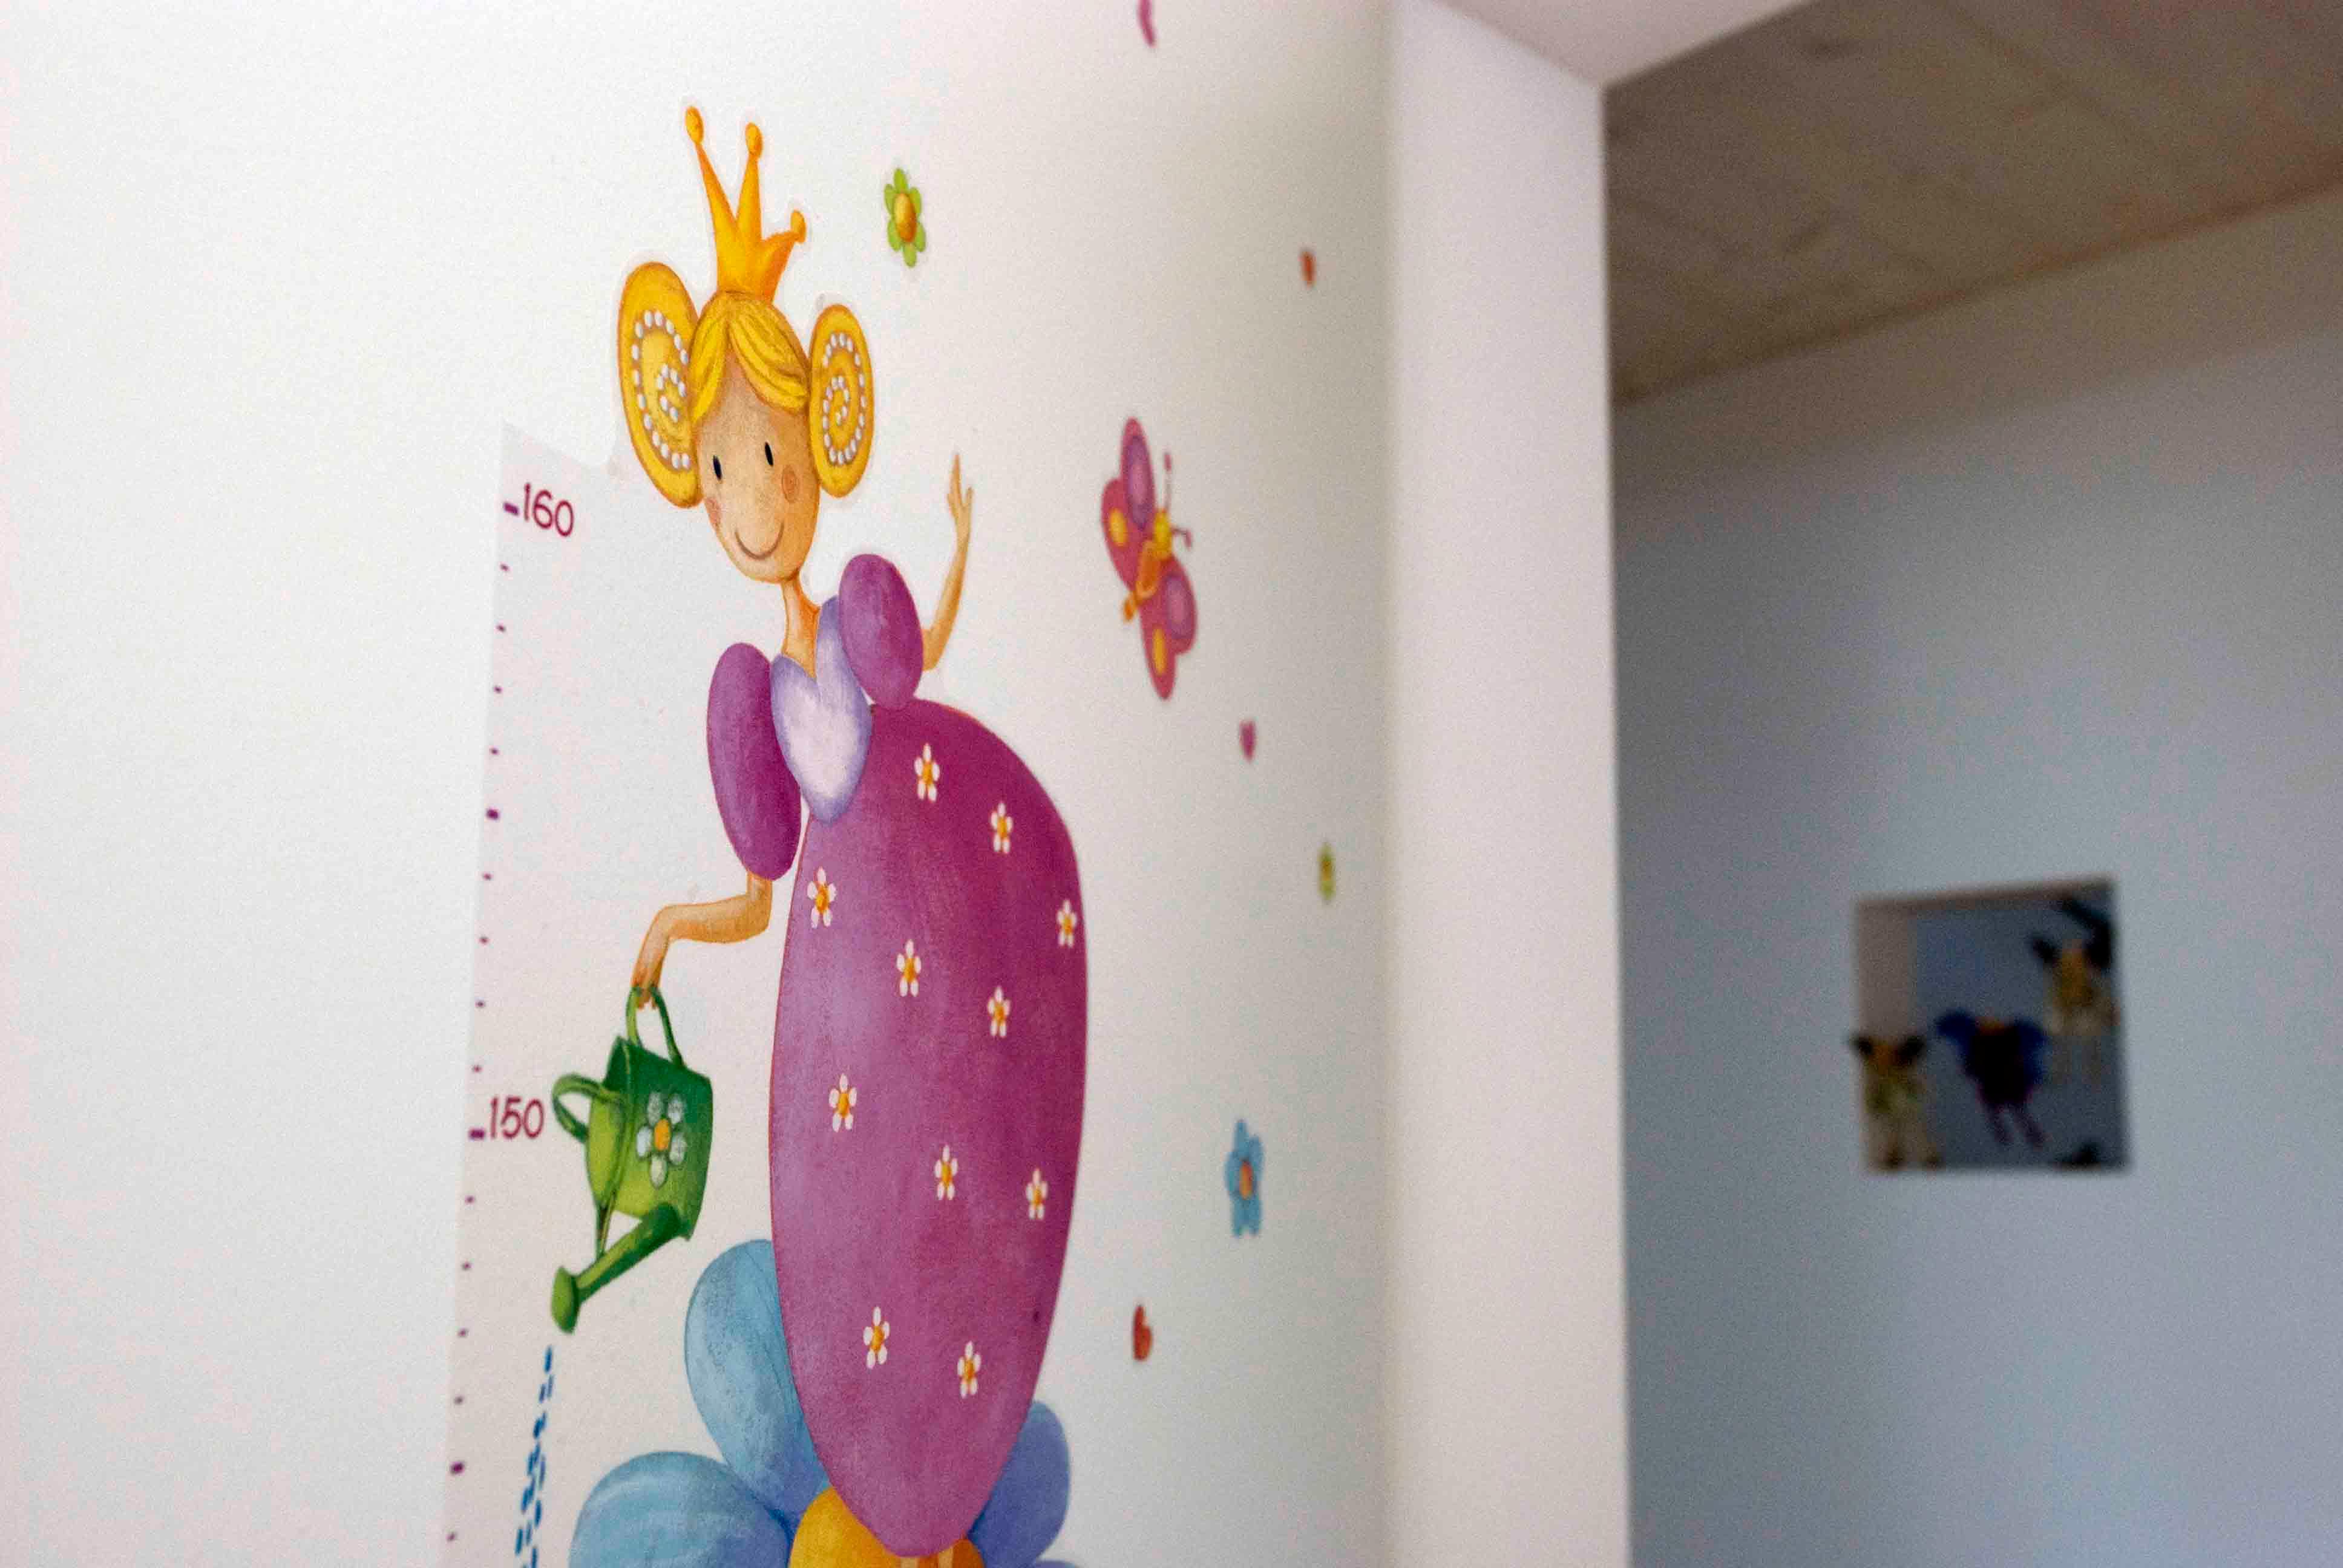  Architektur-Reportage Ersigen liebevolle Details: Wandzeichnungen für die Kinder  